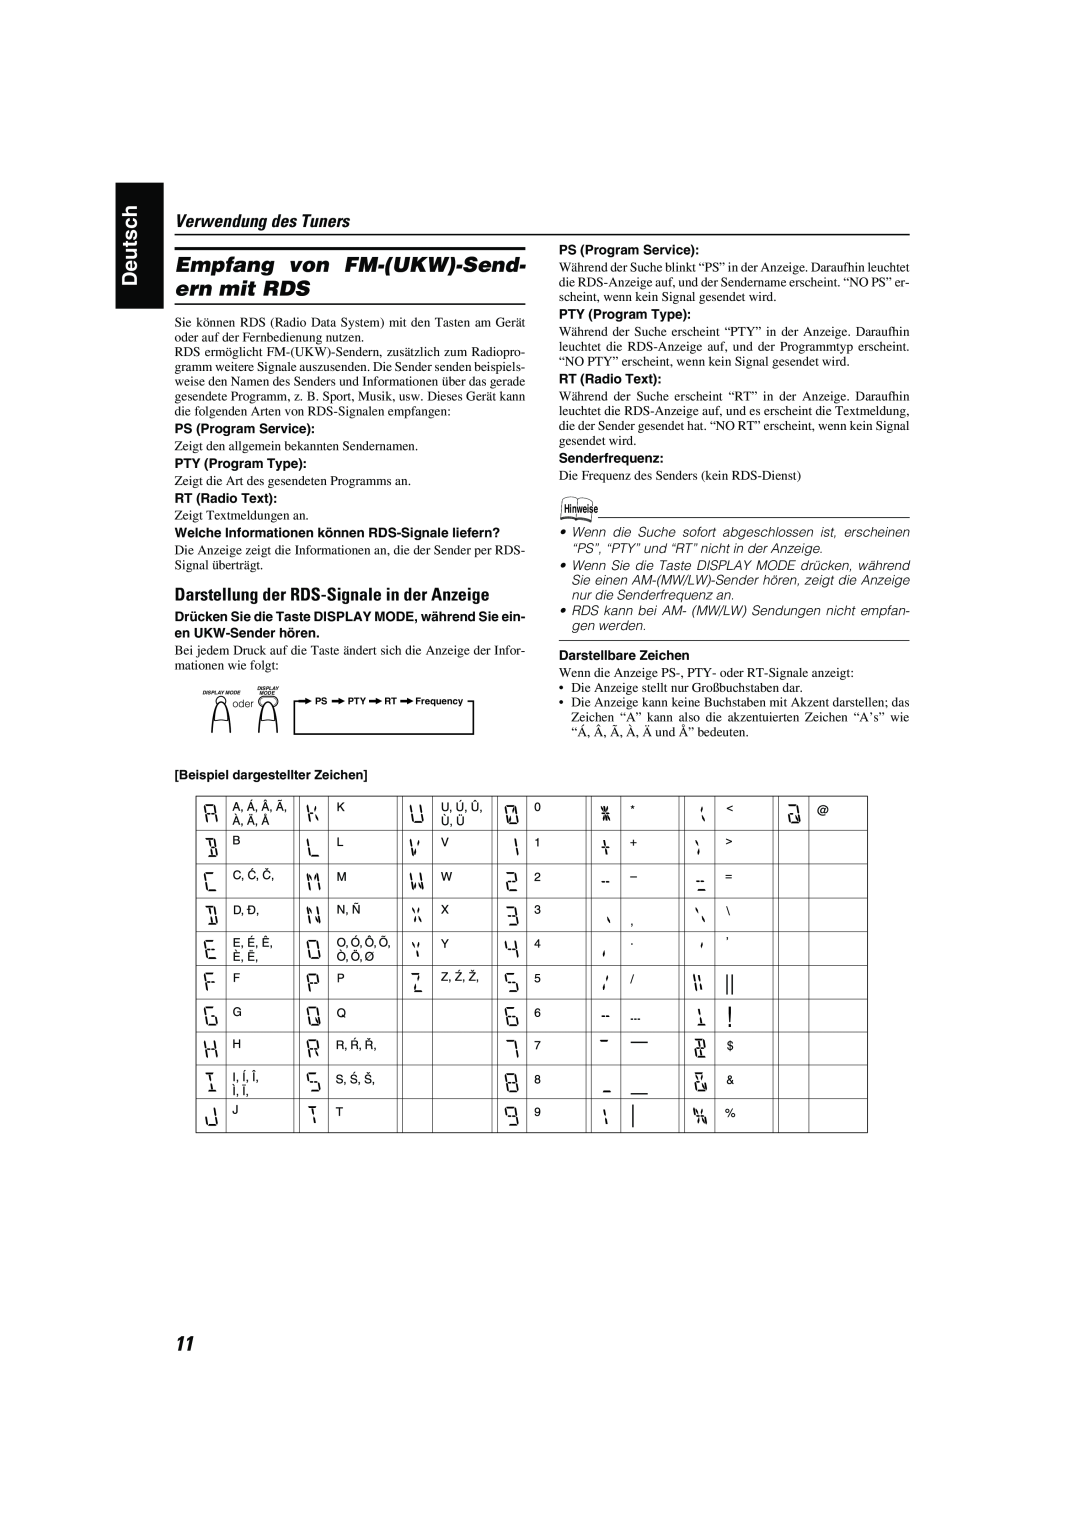 JVC CA-MXK10R manual Empfang von FM-UKW-Send-ern mit RDS, Verwendung des Tuners, Darstellung der RDS-Signalein der Anzeige 